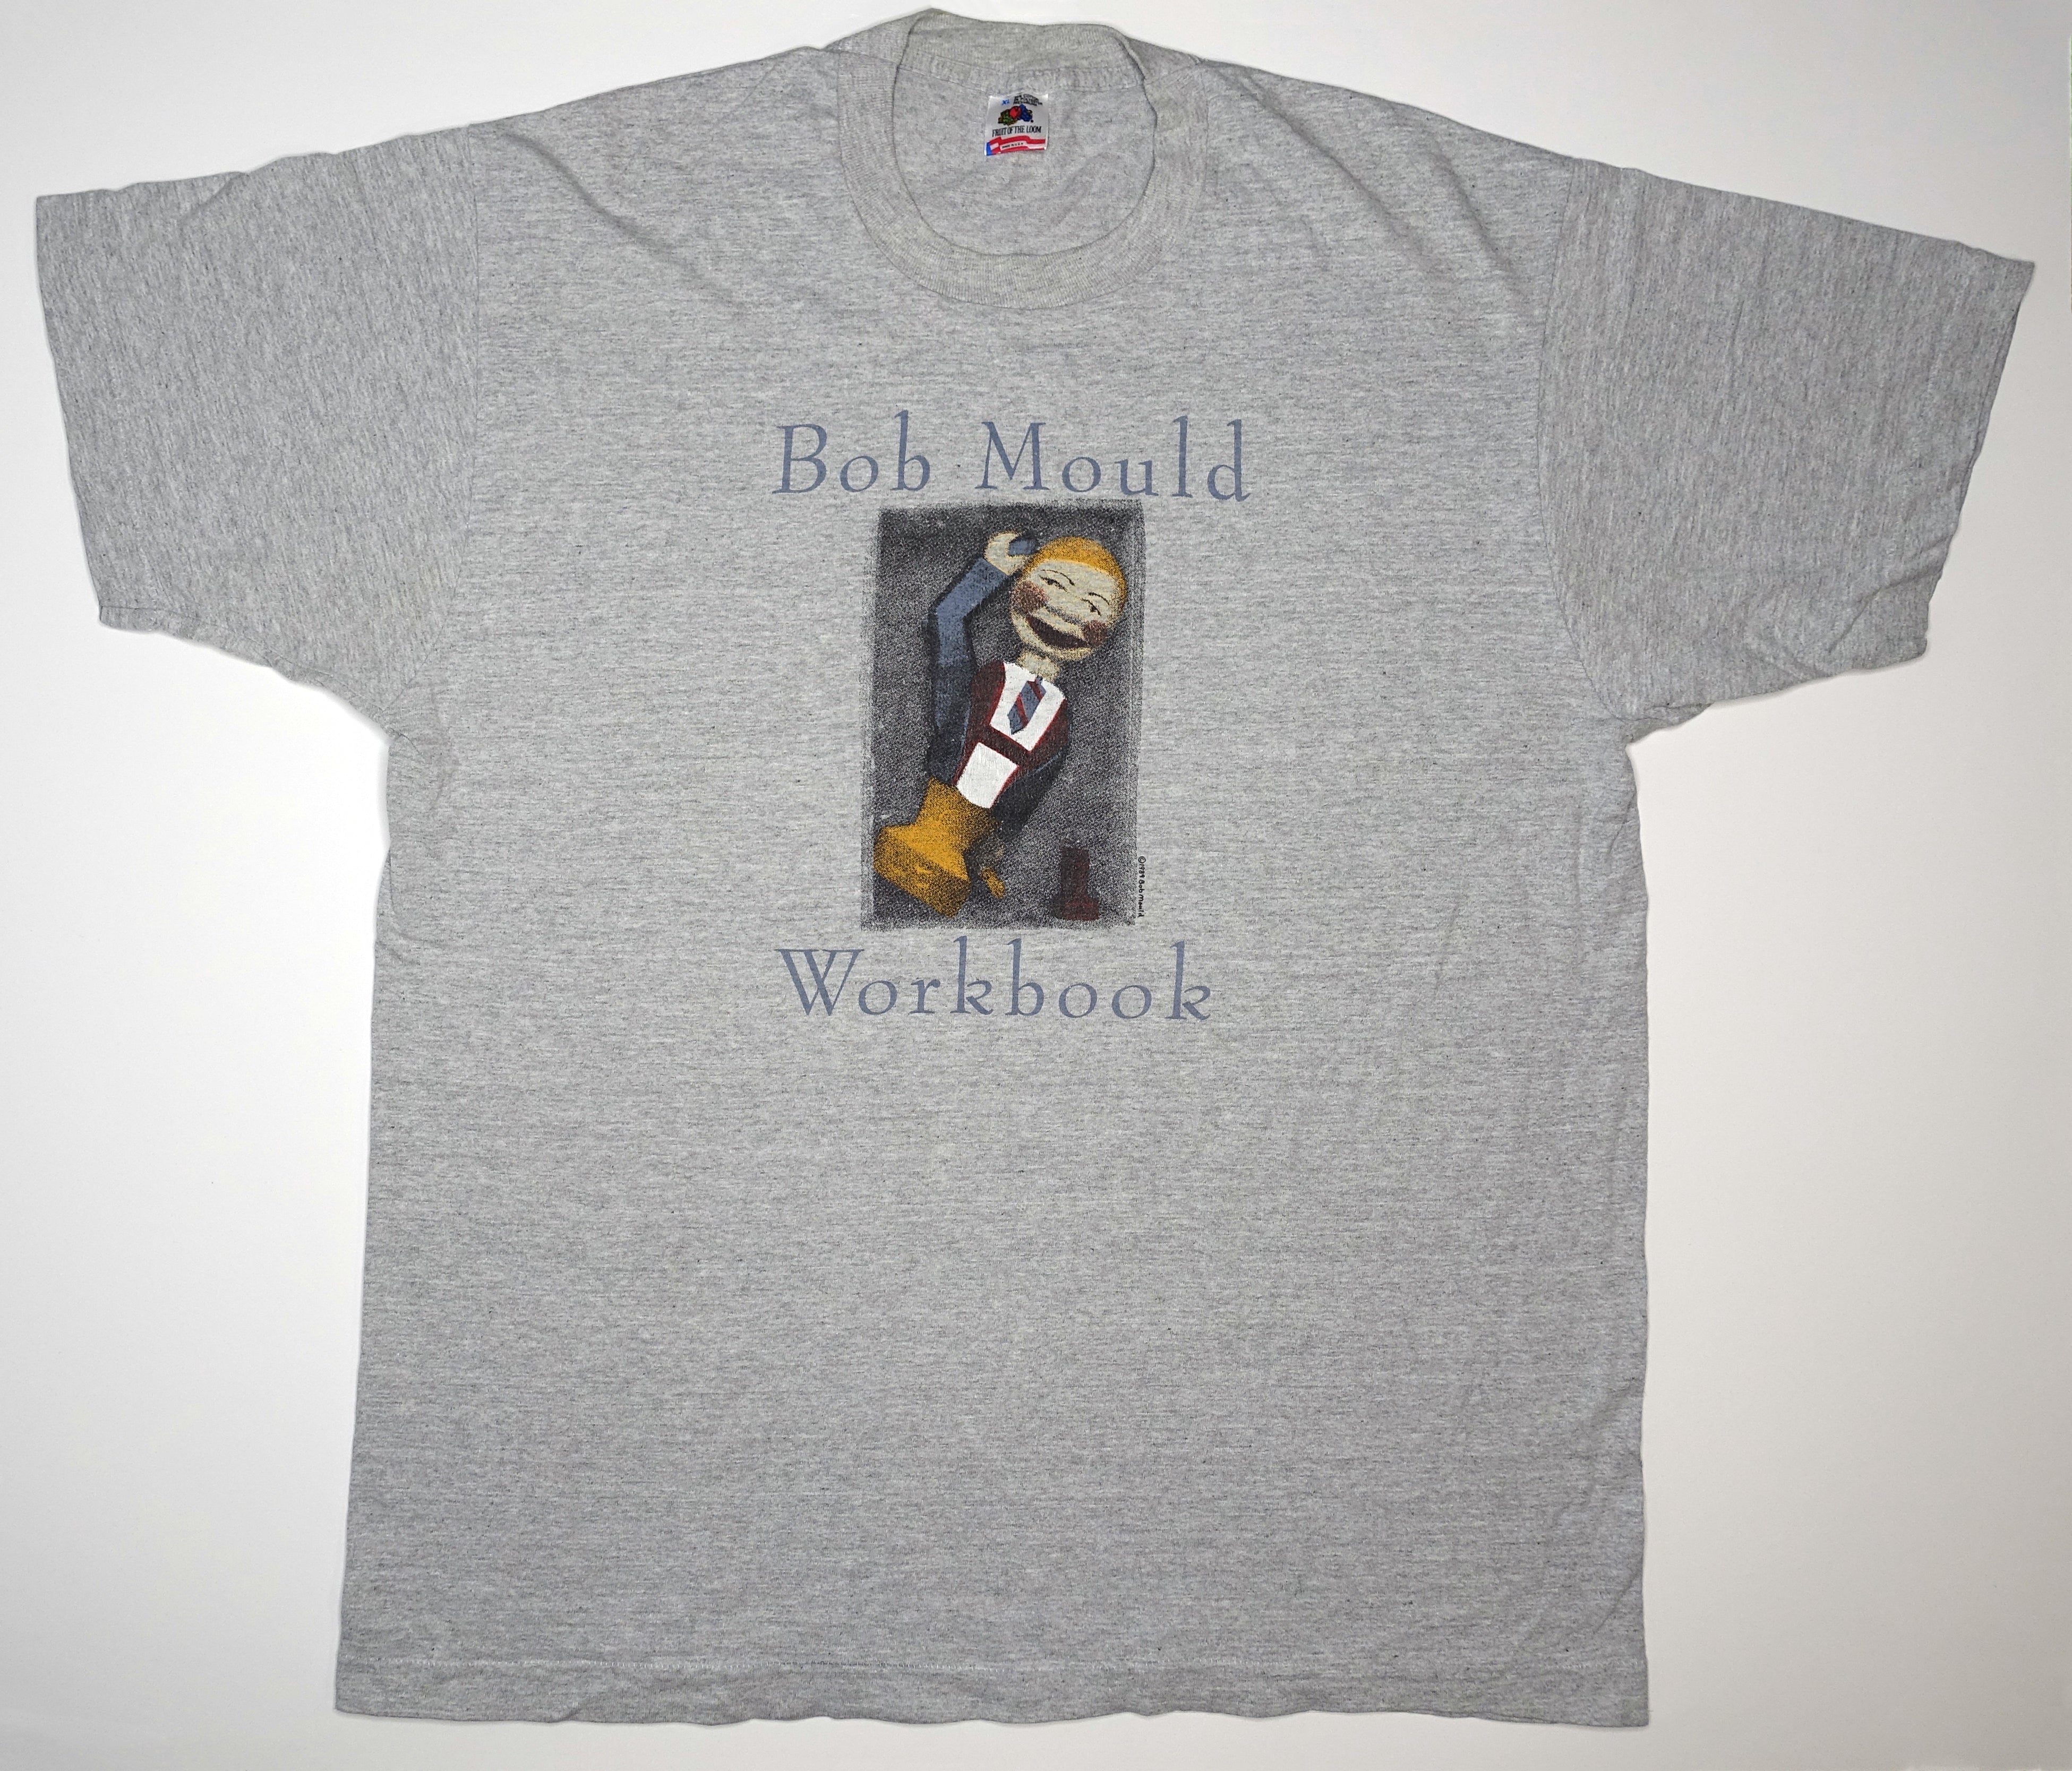 Bob Mould - Workbook 1989 Tour Shirt Size XL